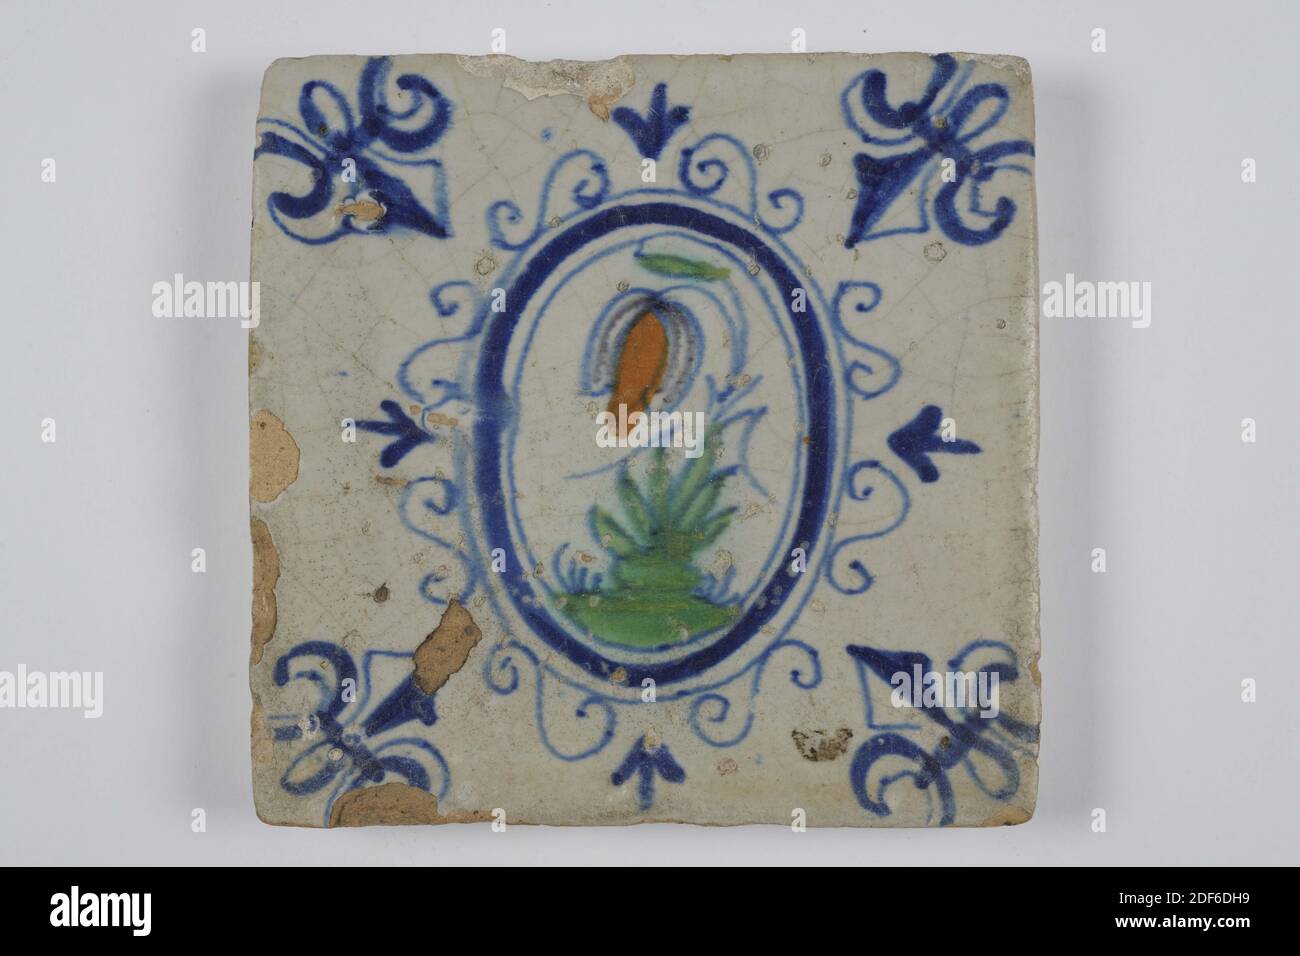 Carreau mural, Anonyme, entre 1620-1650, glaçure d'étain, faïence, général : 13 x 12.8 x 1,4cm (130 x 128 x 14mm), fleur, carreau mural en faïence recouvert de glaçure d'étain. Multicolore peint en bleu, vert et orange-brun. La tuile représente une fleur sur un sol à l'intérieur d'un ovale avec des nénuphars. La fleur a une longue tige avec quatre feuilles de chaque côté. La tuile a un motif d'angle à trois points, 1995 Banque D'Images